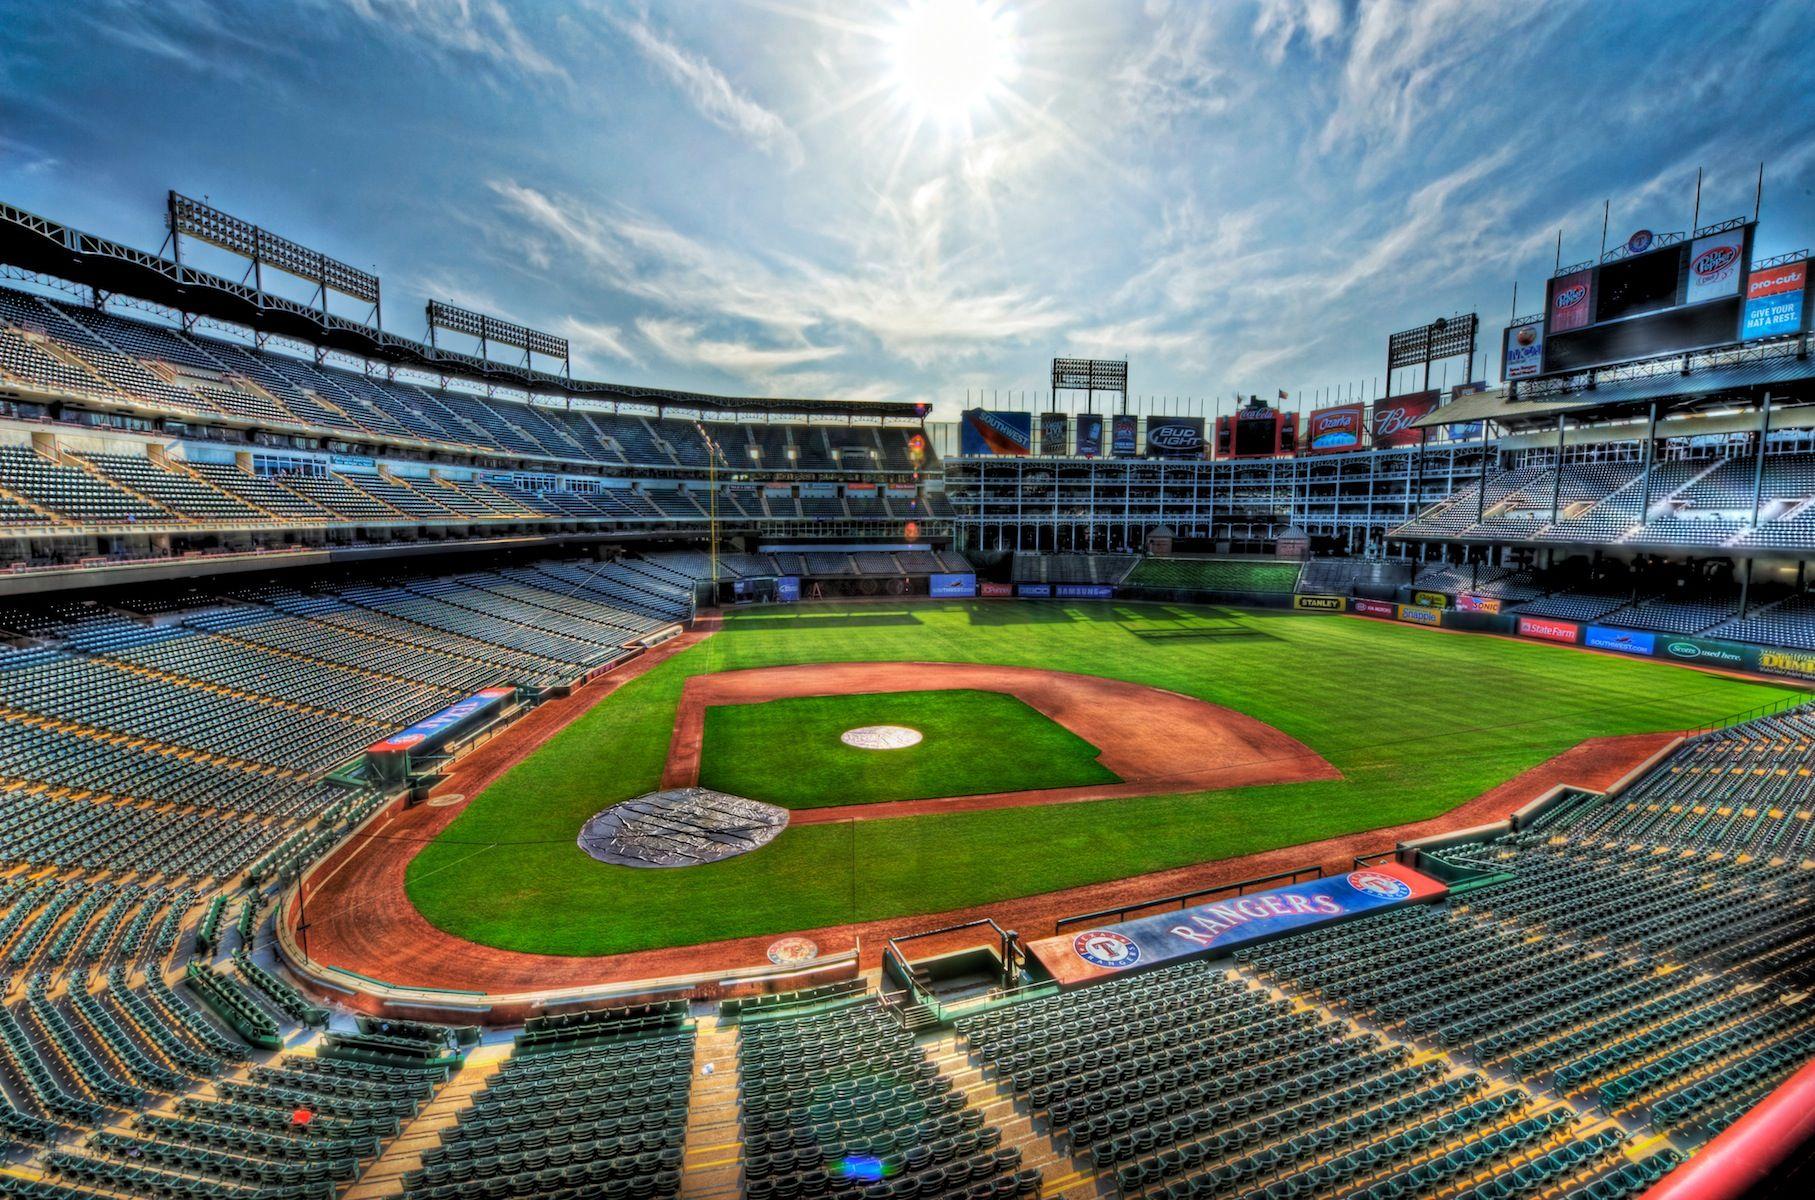 Texas Rangers Ballpark in Arlington